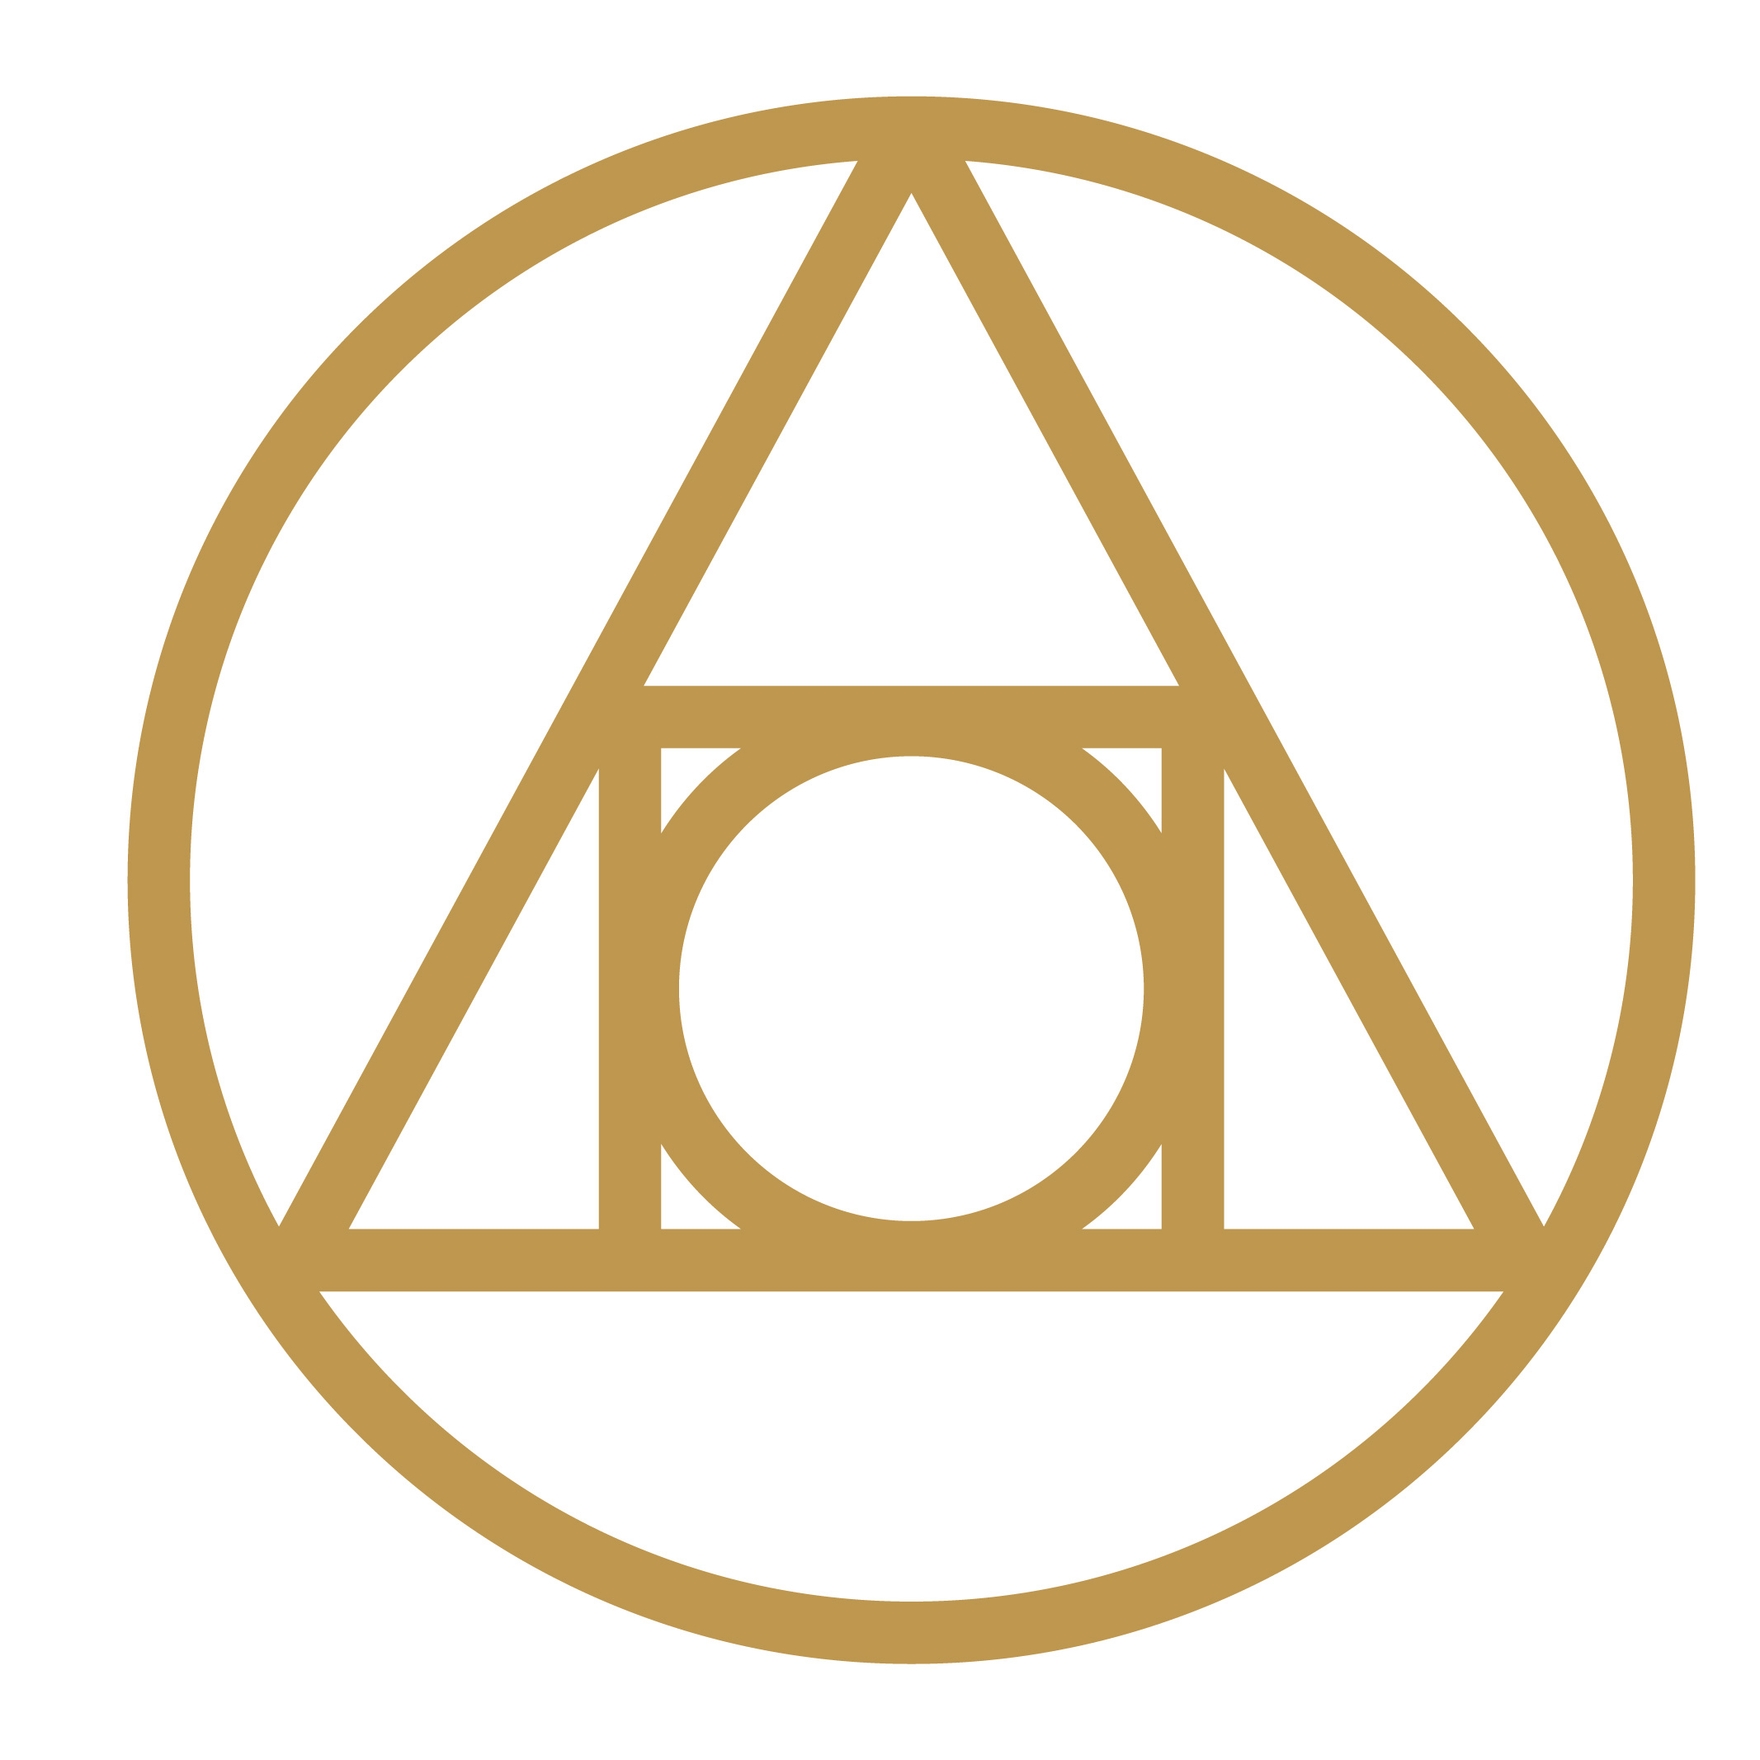 Alchemy Symbol Clipart in SVG, EPS, PNG, Illustrator, JPG - Download ...